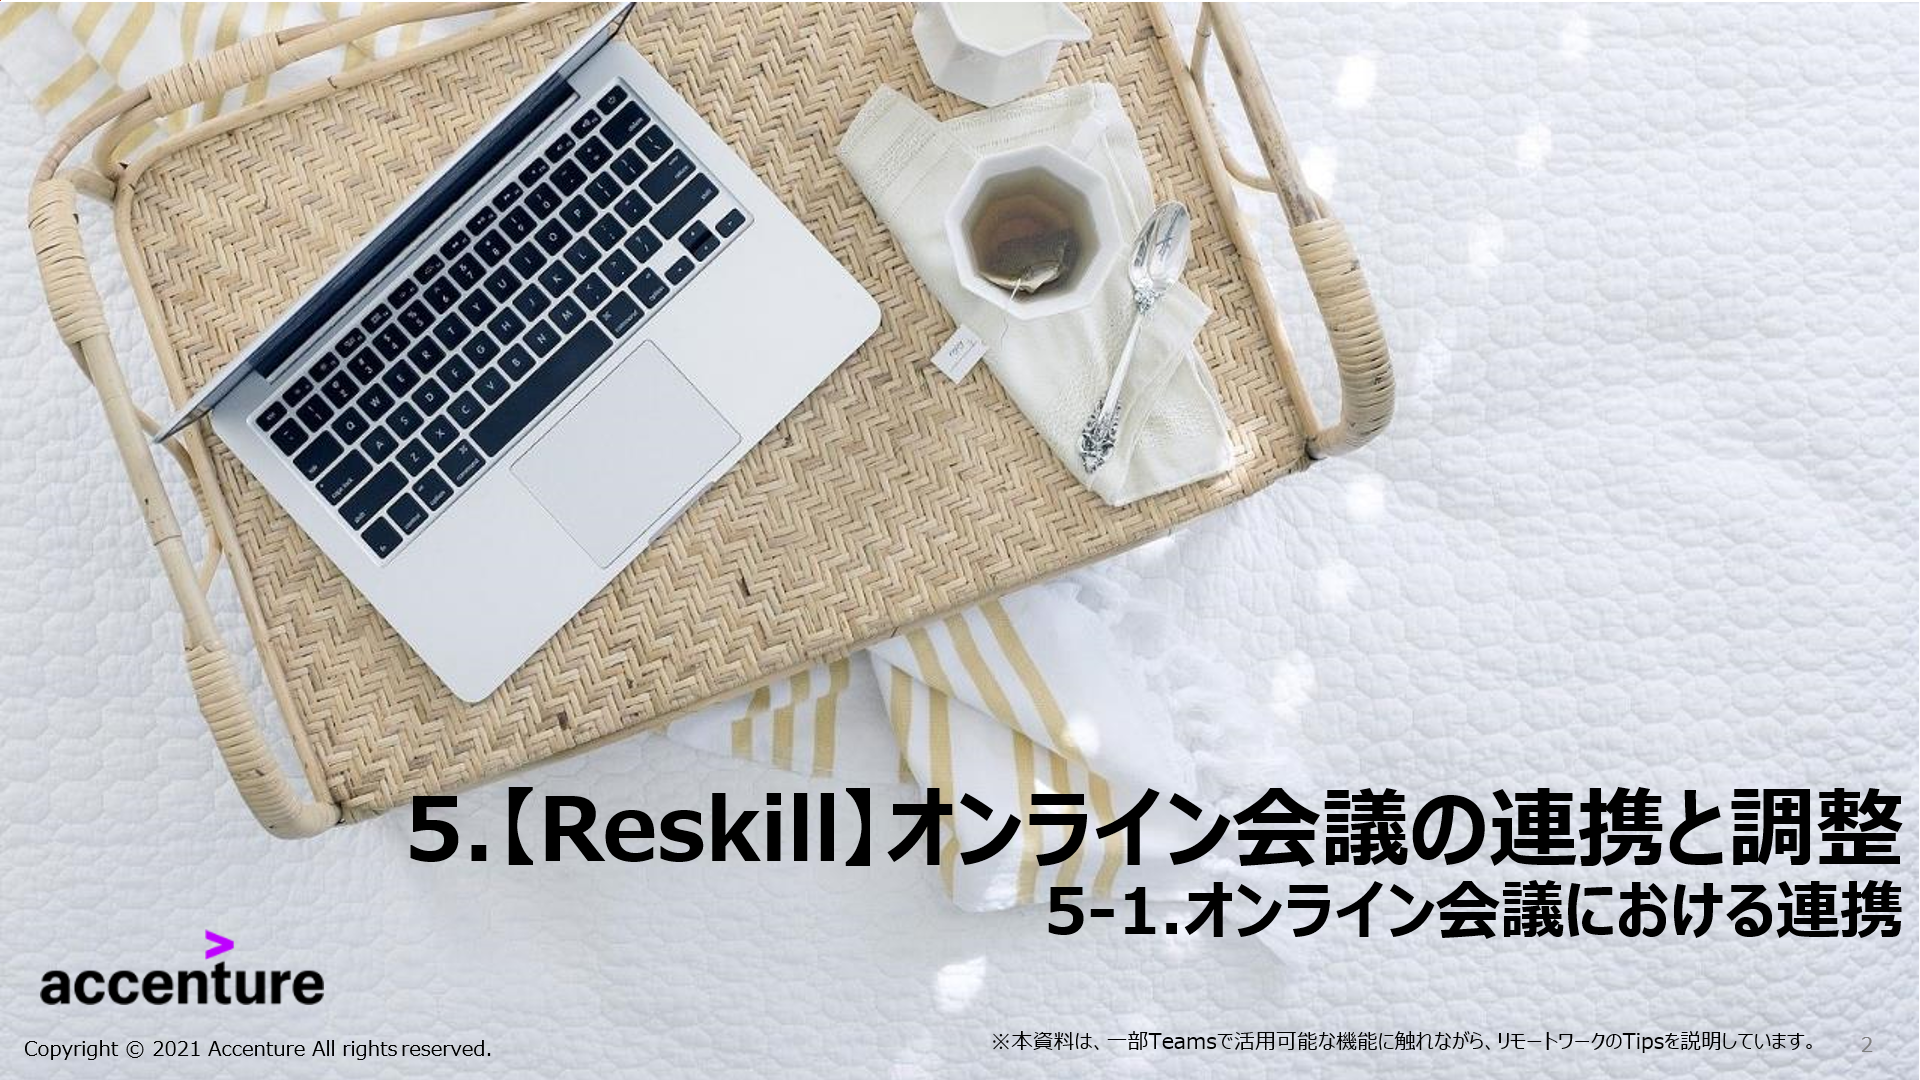 【Reskill】オンライン会議の連携と調整